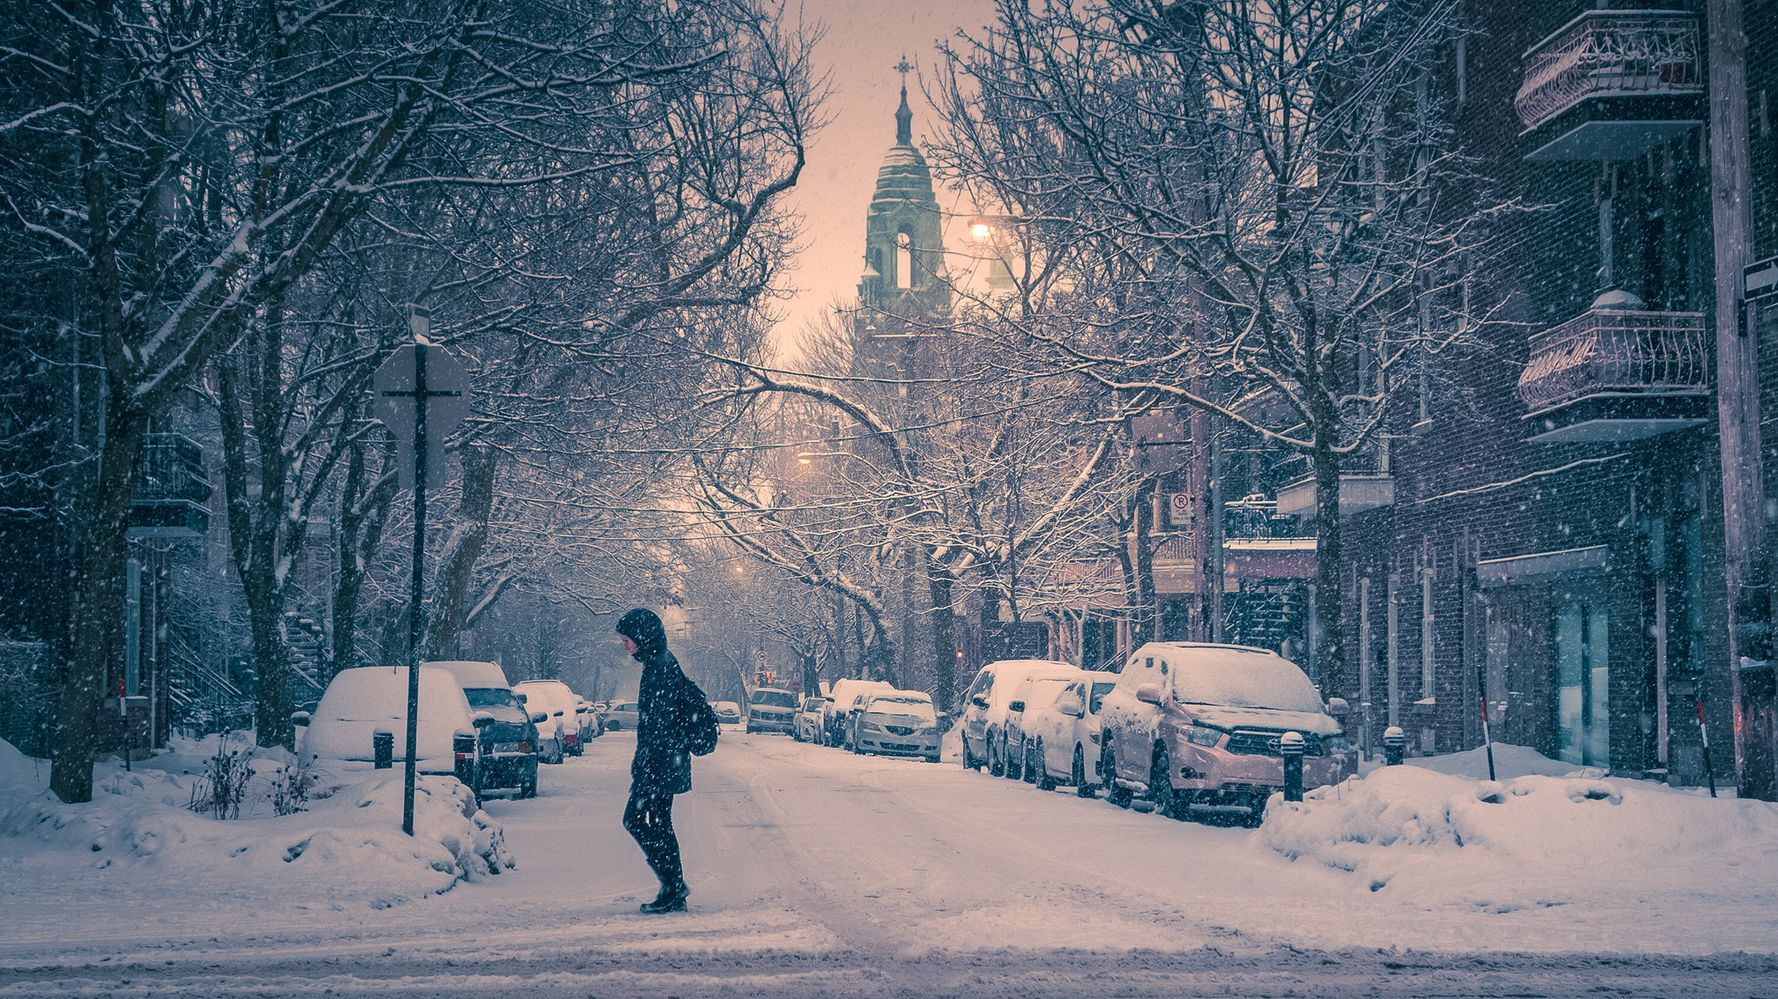 Prévisions météo: l'hiver 2019 sera très froid | HuffPost Québec Nouvelles